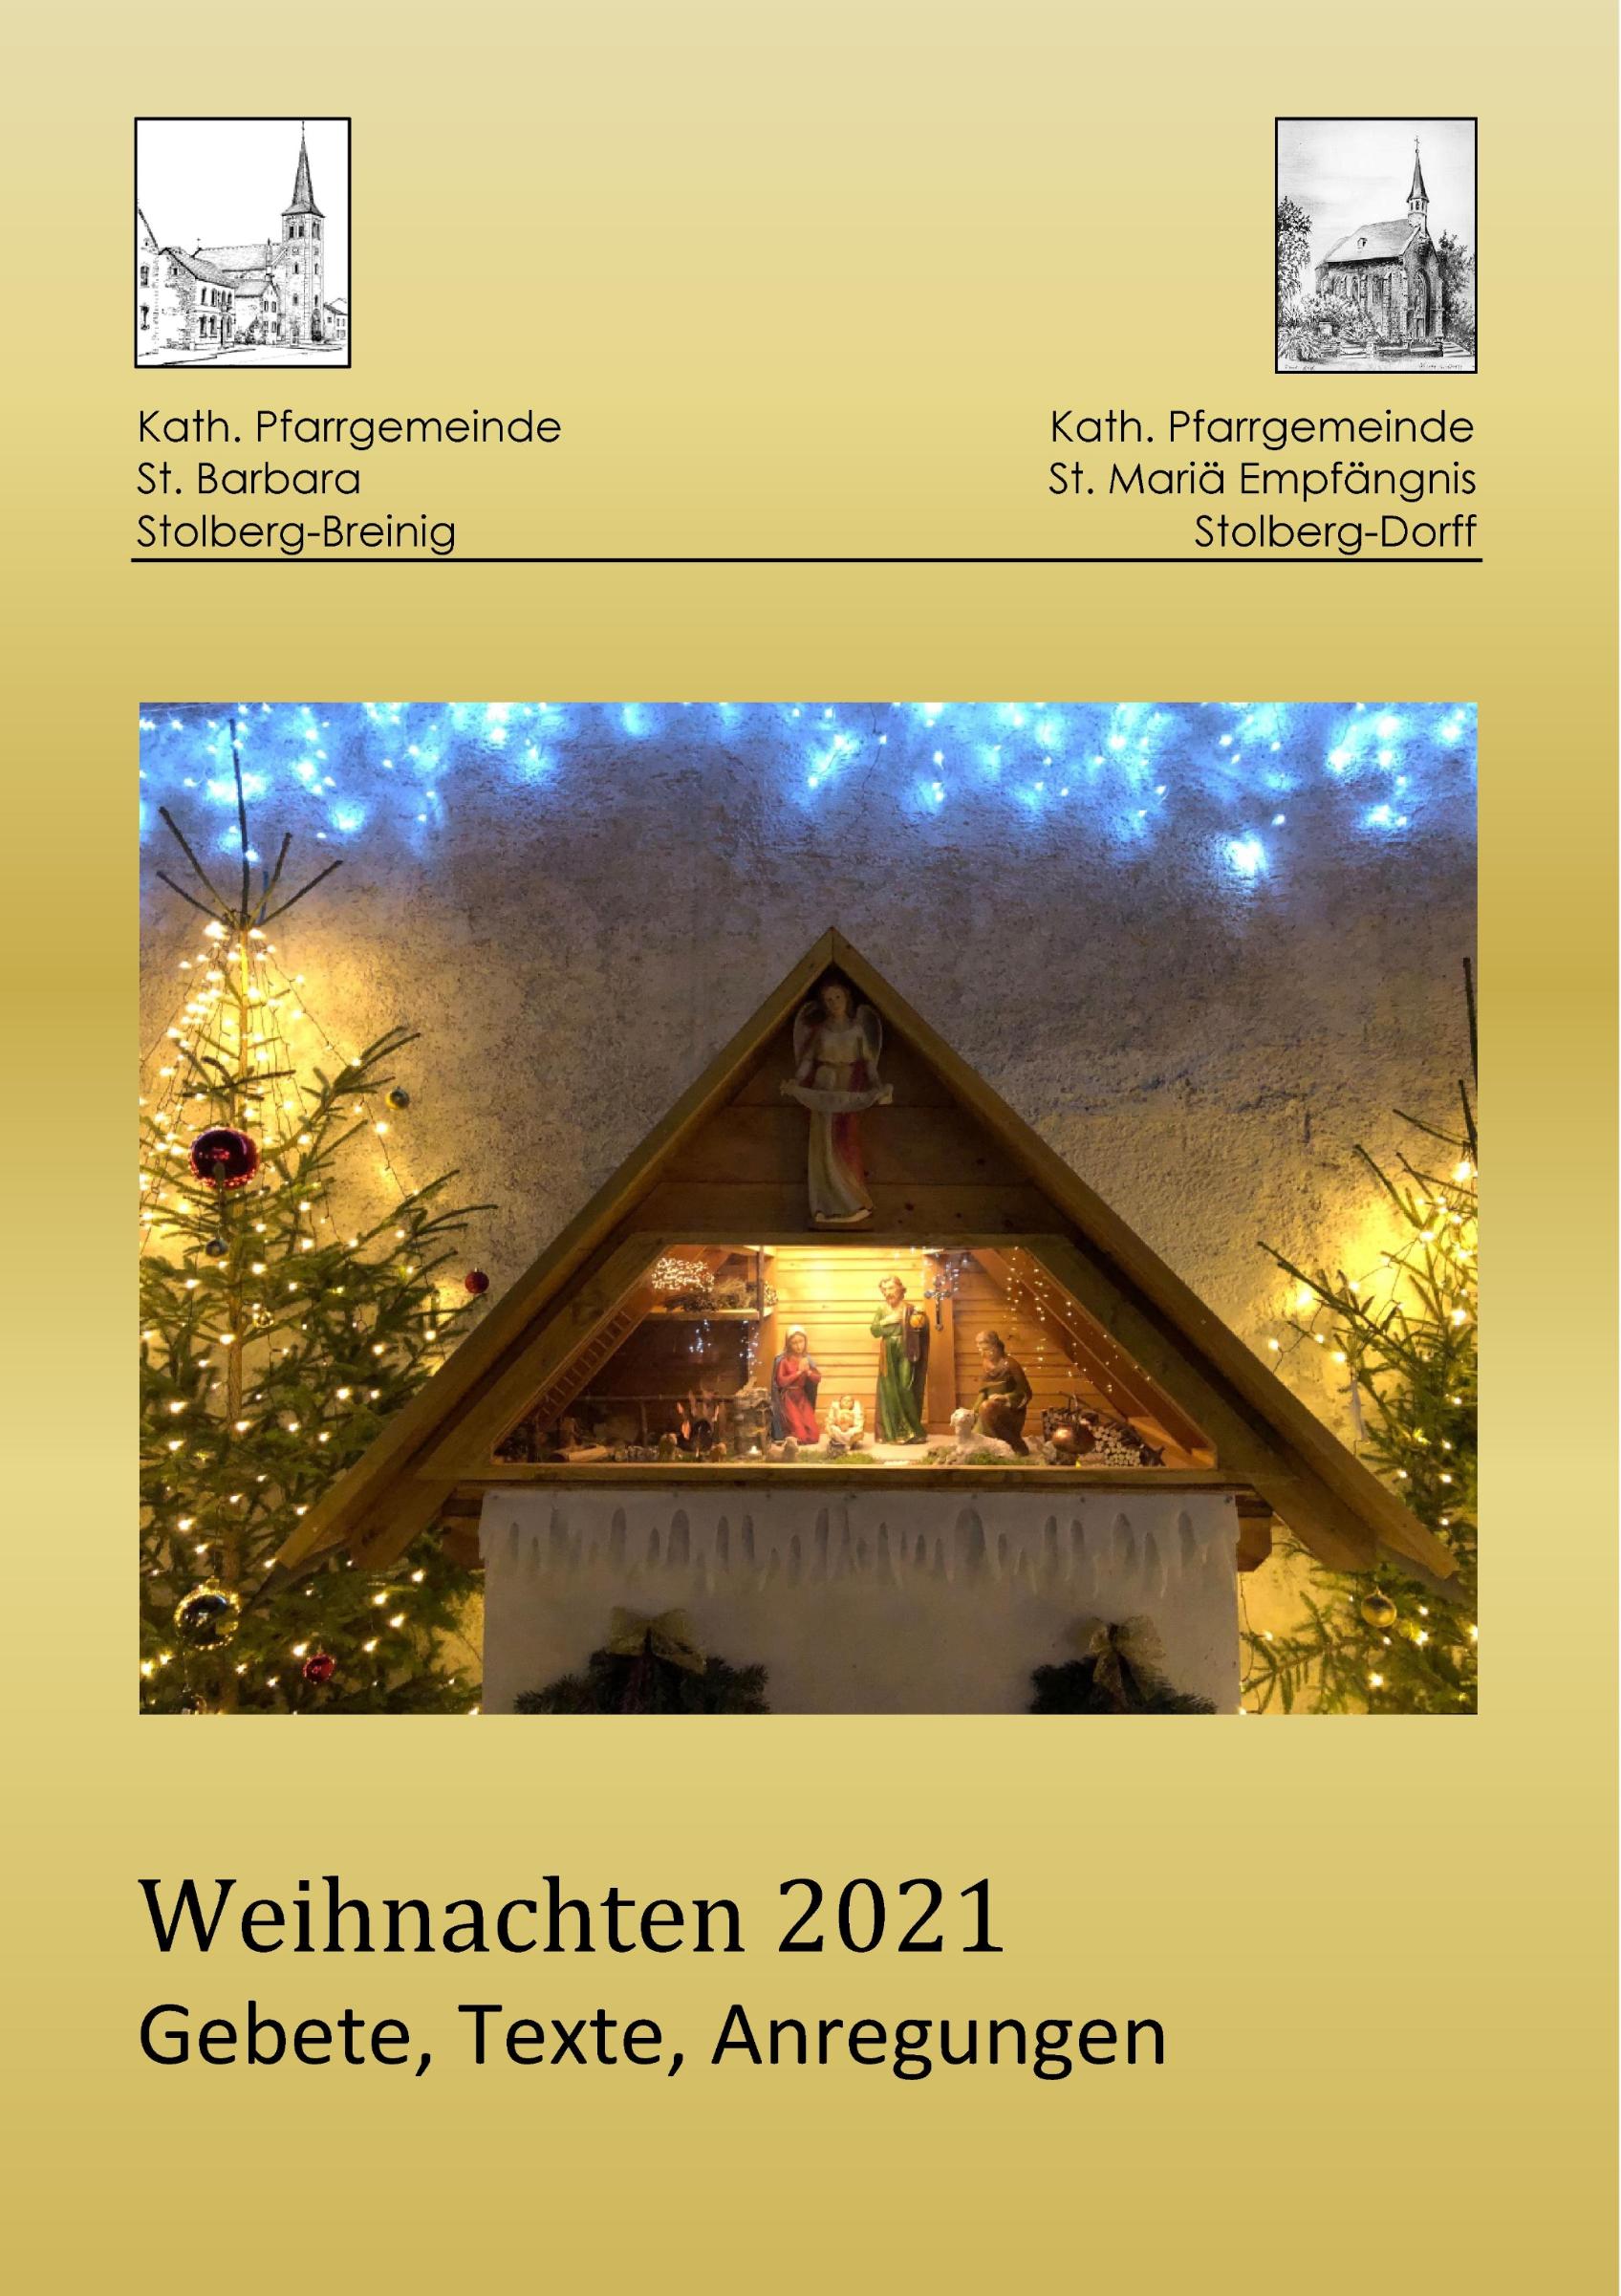 Hausgottesdienst - Weihnachten 2021 (c) Ulrich Lühring